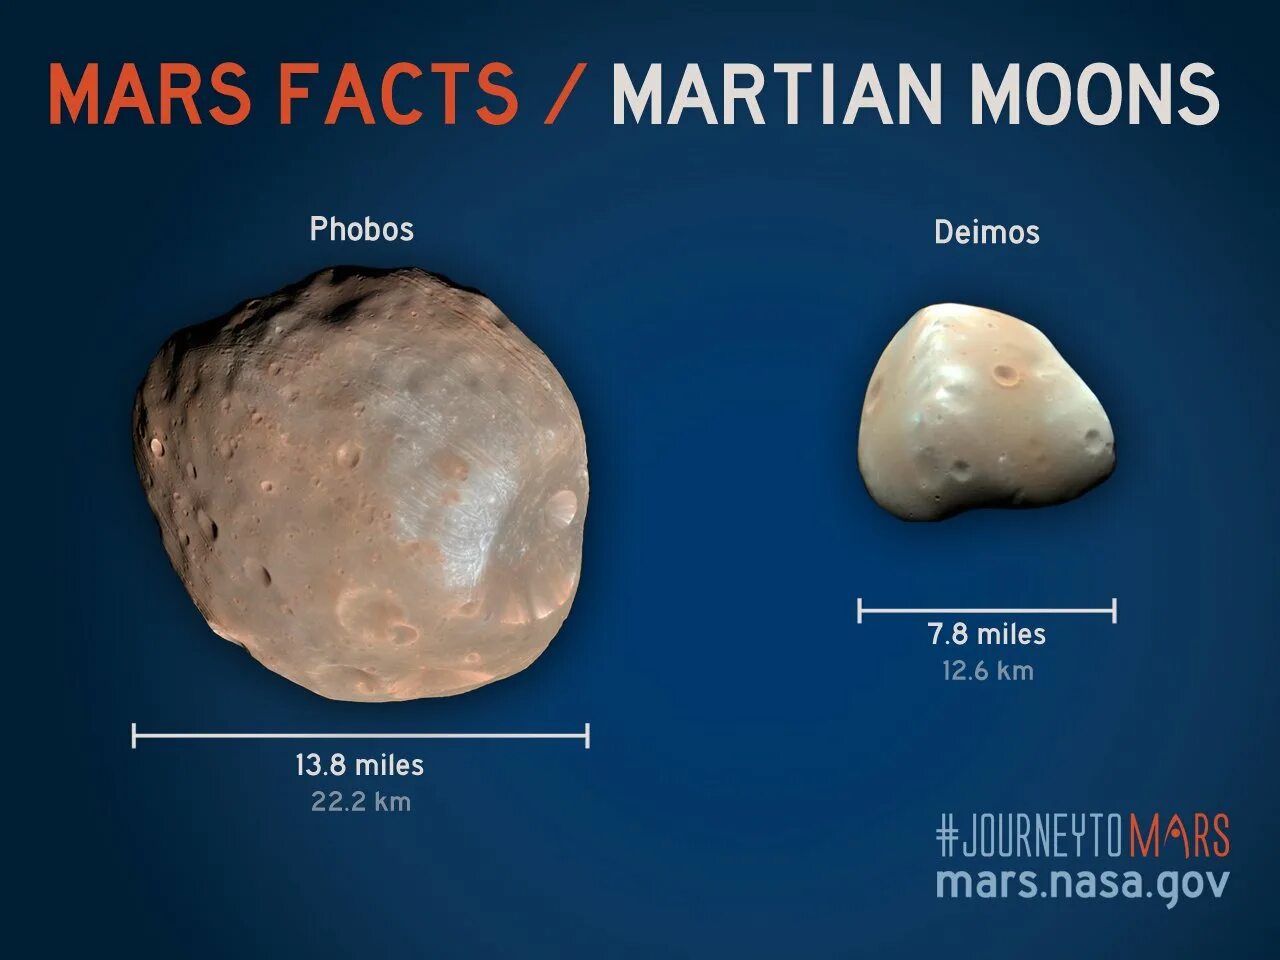 Страх и ужас спутники какой. Фобос и Деймос спутники планеты. Марс Планета спутники Деймос. Марс и его спутники Фобос и Деймос. Деймос (Спутник Марса).